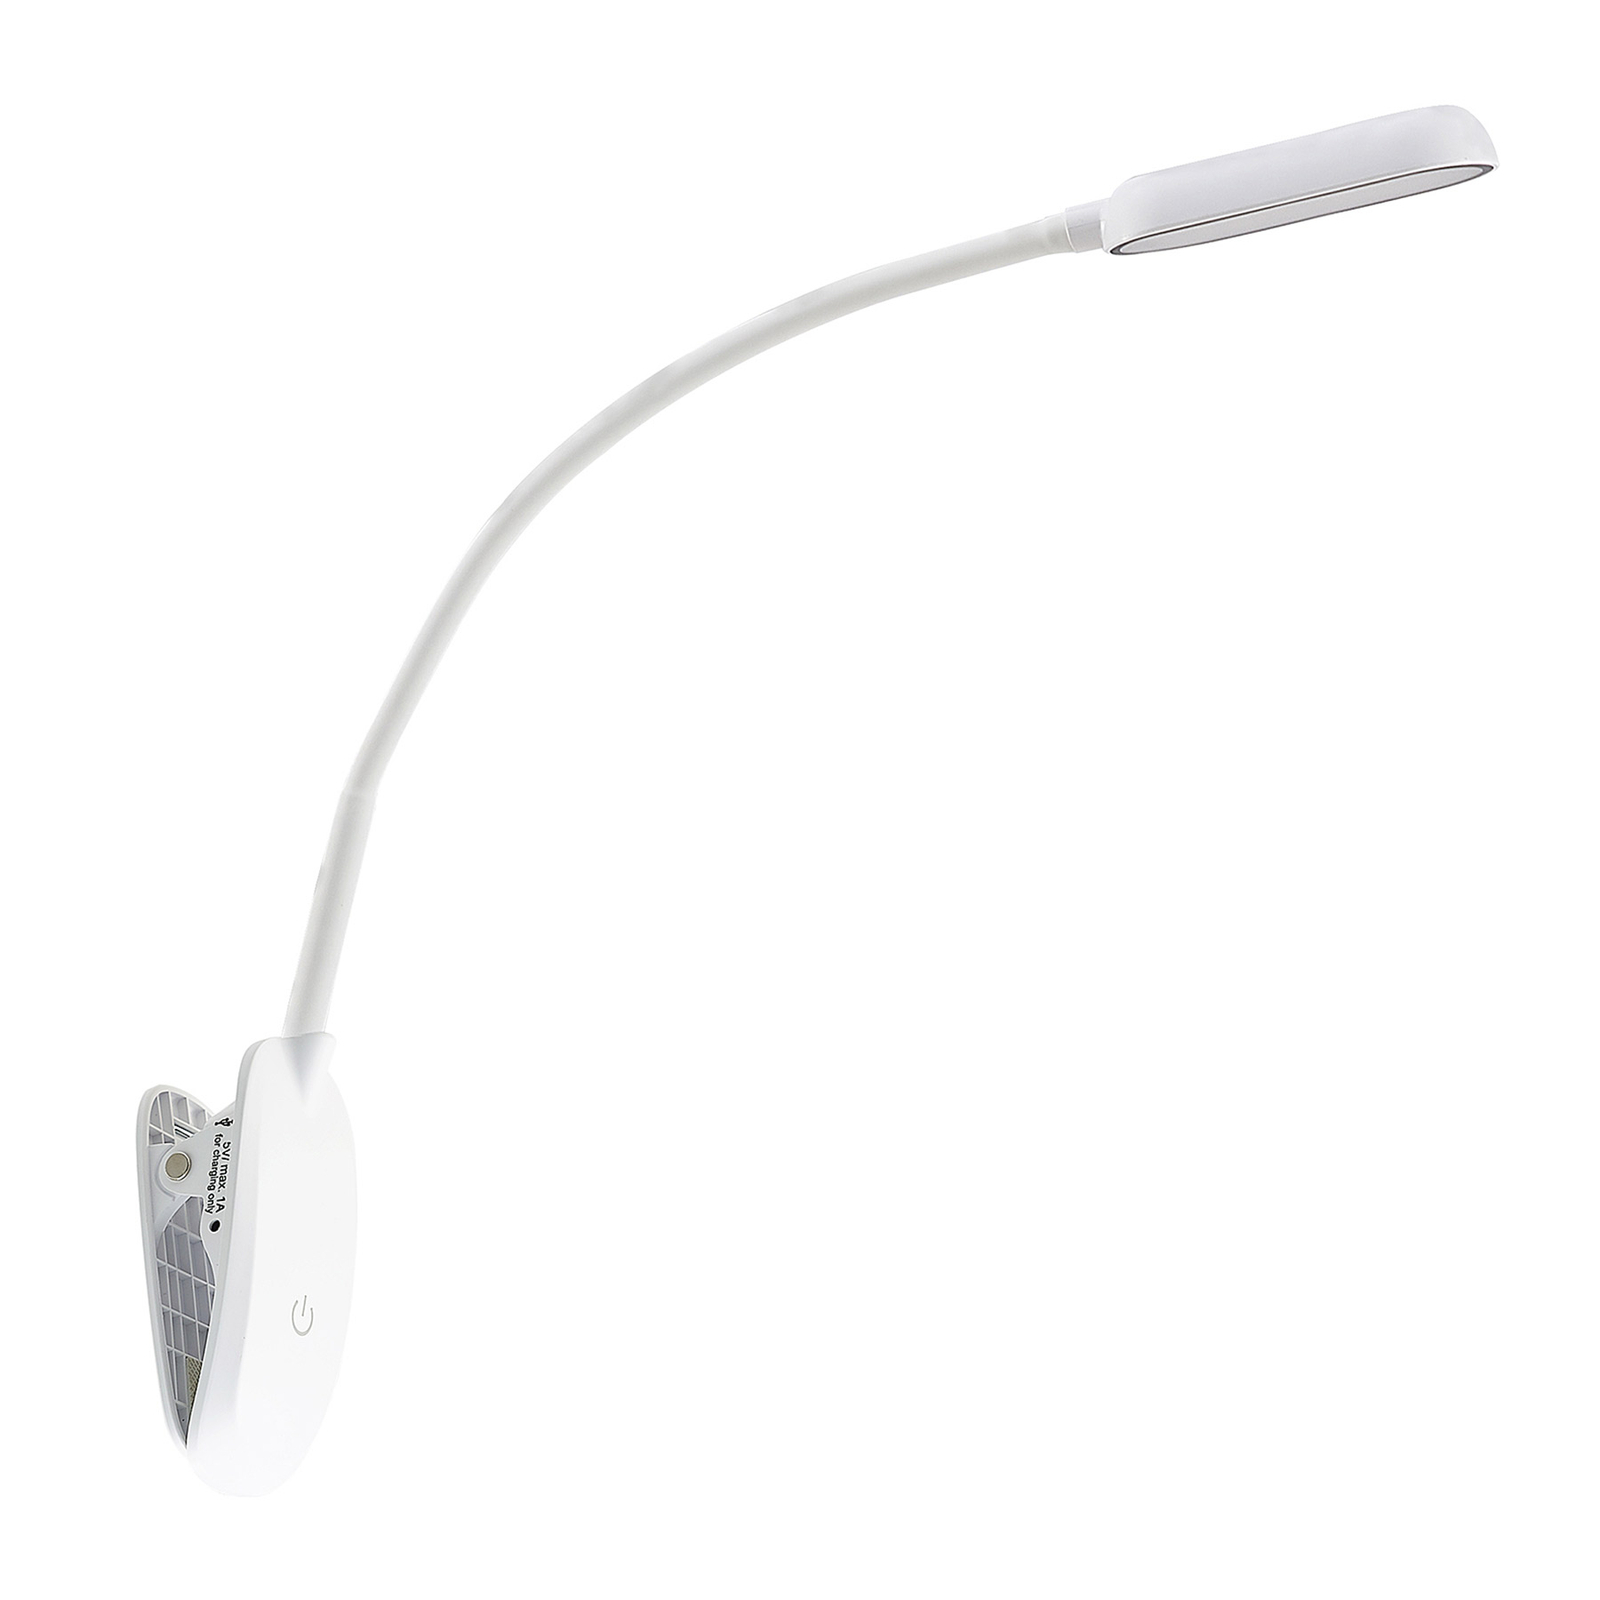 Prios LED-es bilincslámpa Najari, fehér, újratölthető akkumulátor, USB, 51